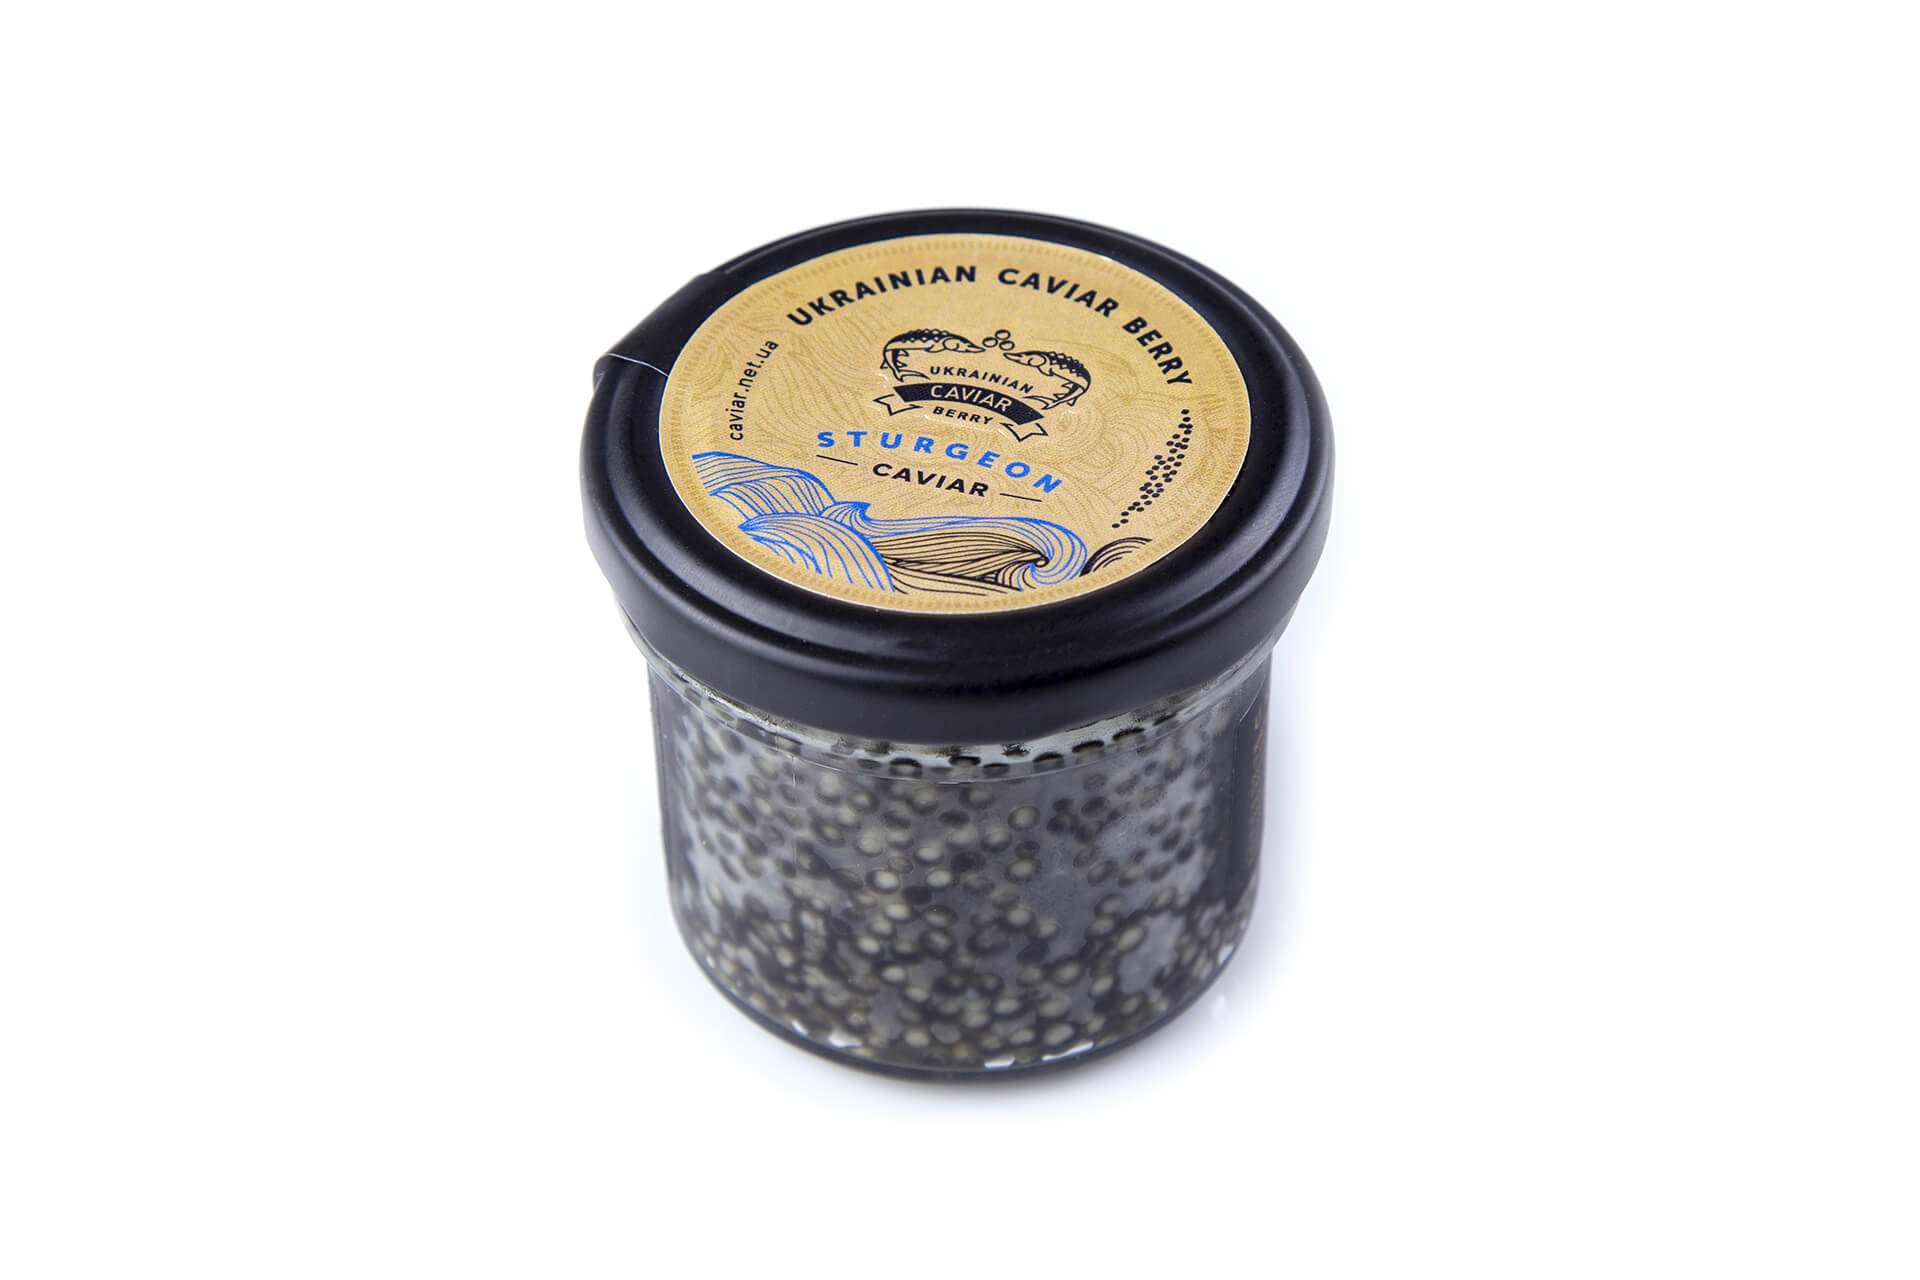 Russian sturgeon caviar